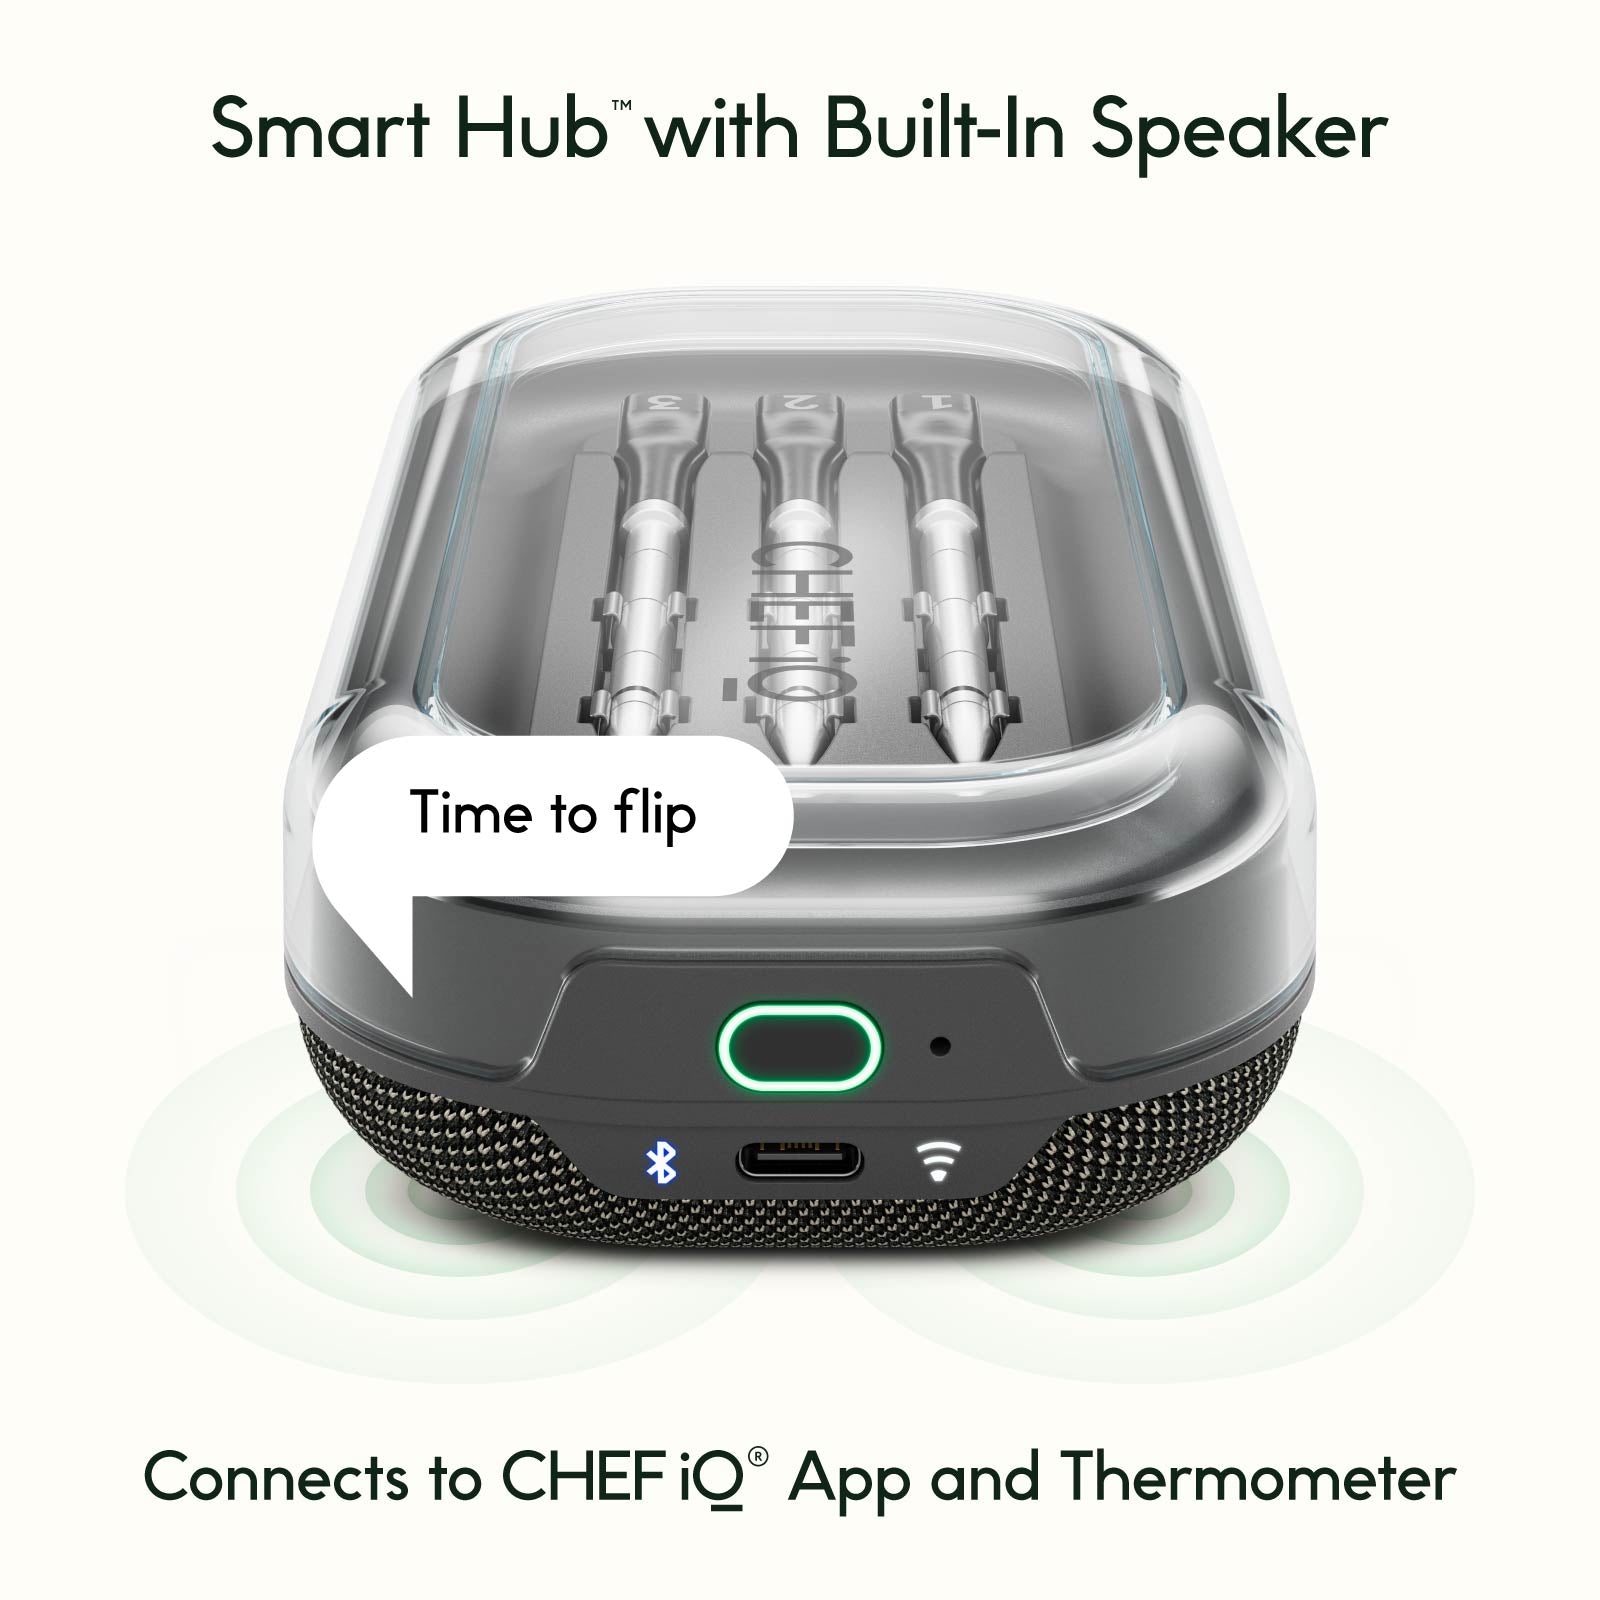 Chef iQ Smart Single Thermometer 